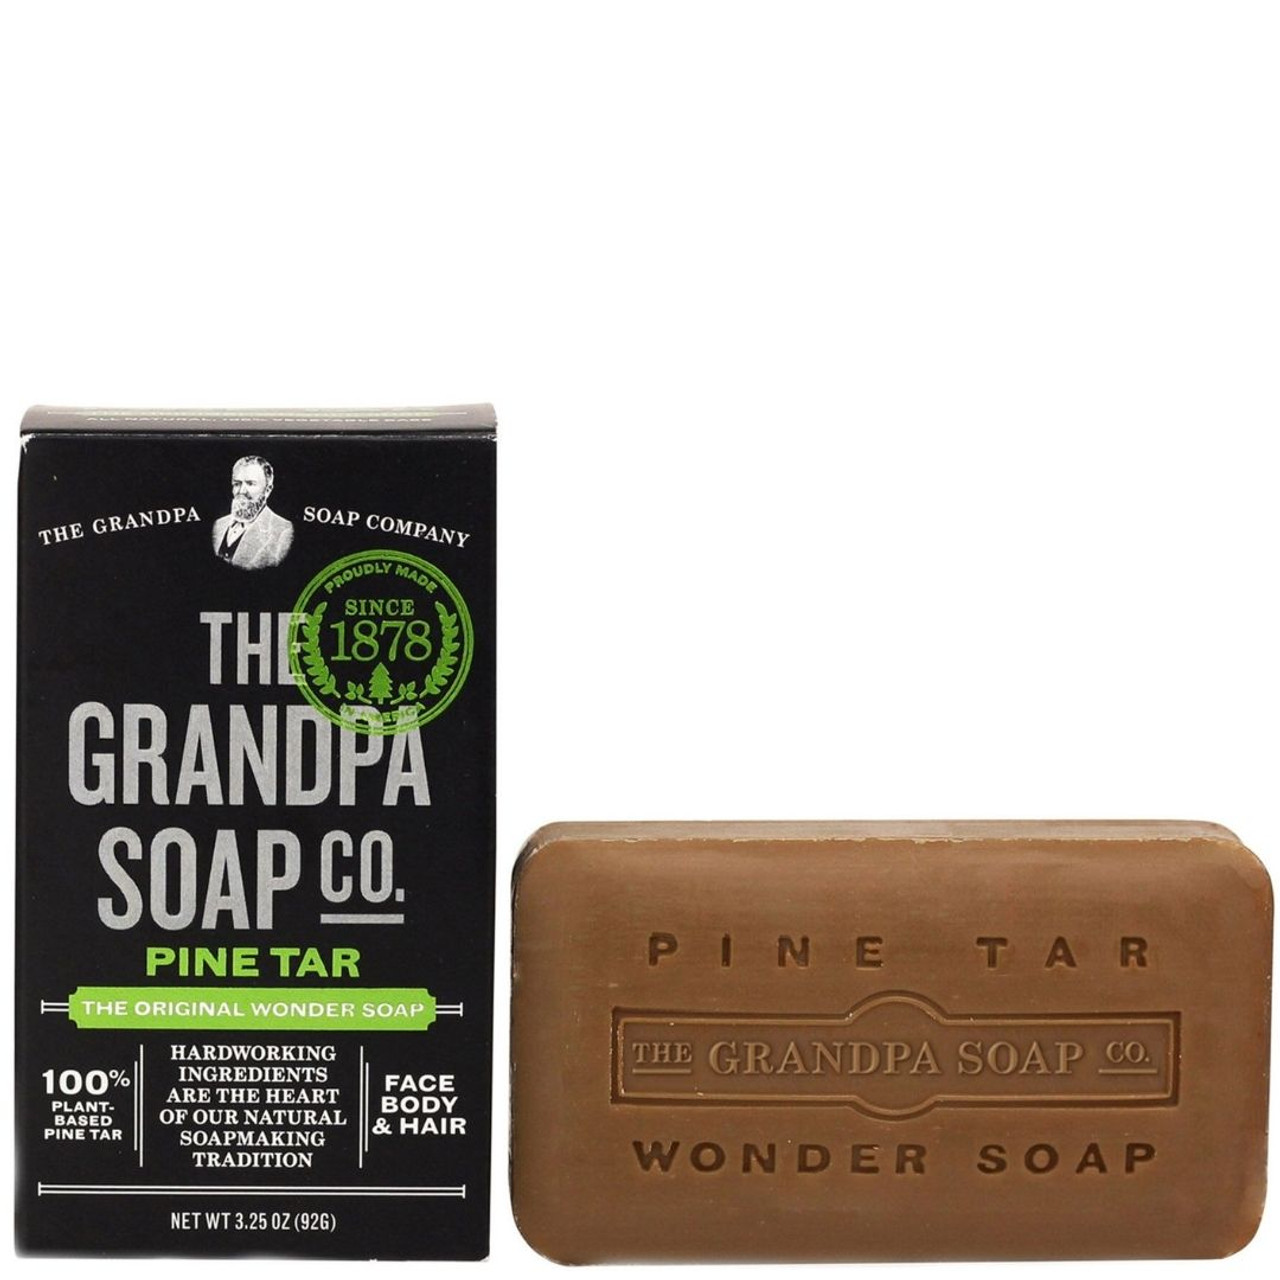 The Grandpa Soap Company Review